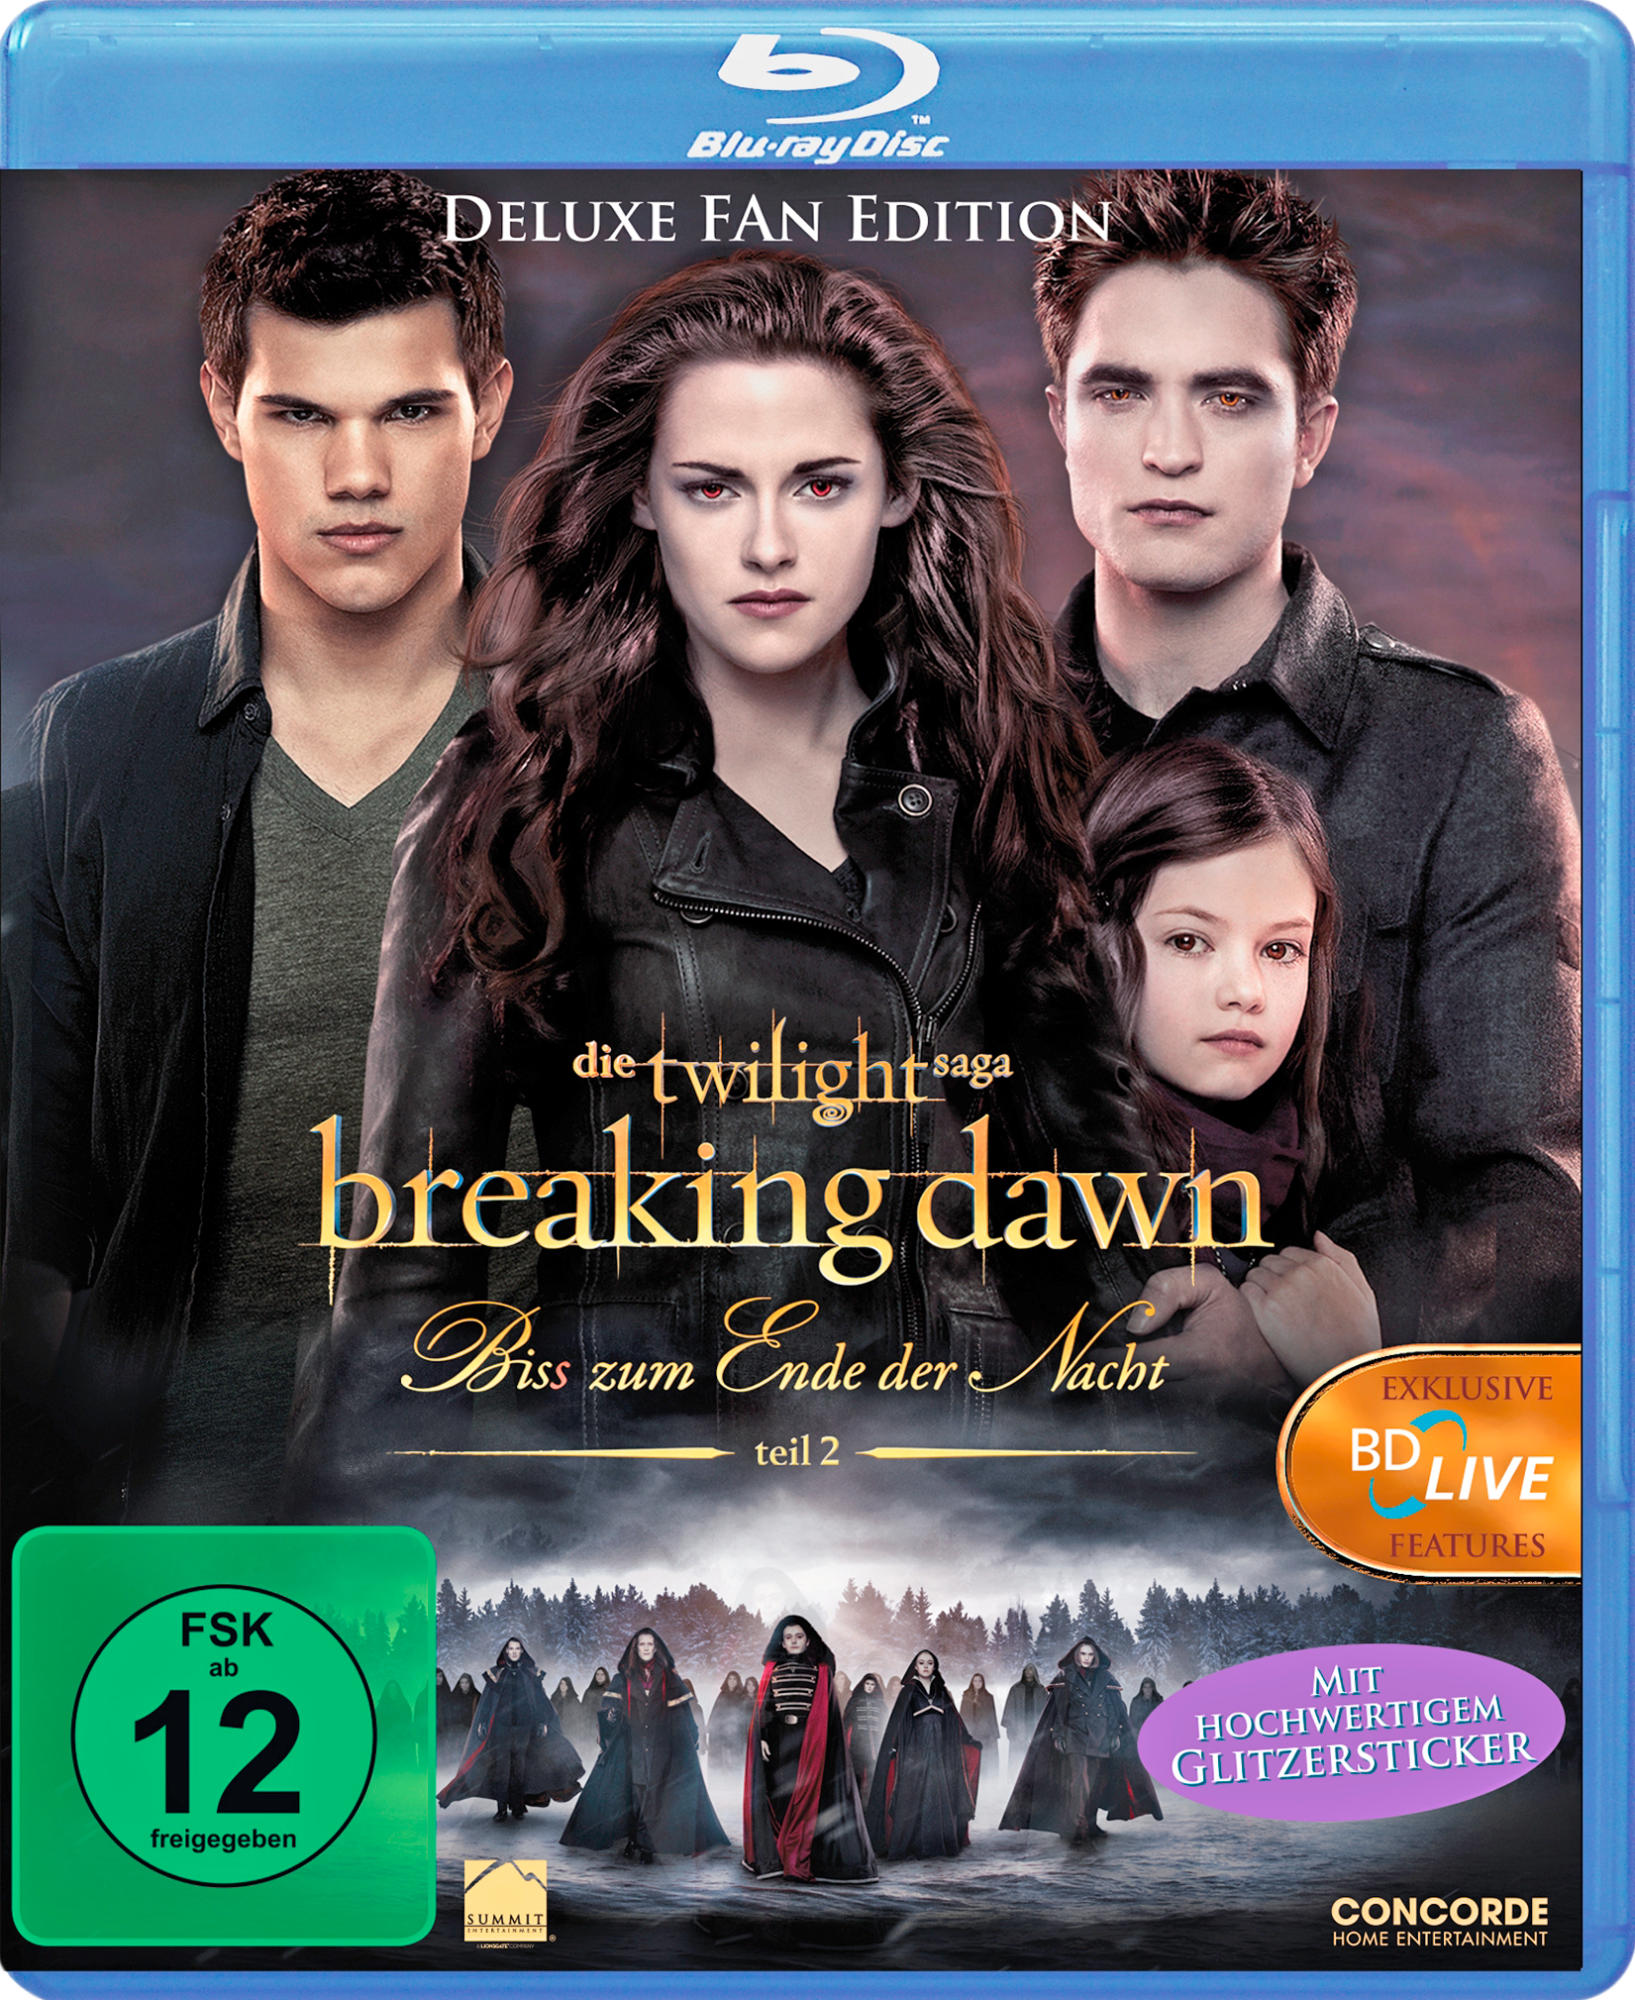 Blu-ray - Nacht Bis(s) zum Dawn Breaking 2 Twilight der - – Ende Teil